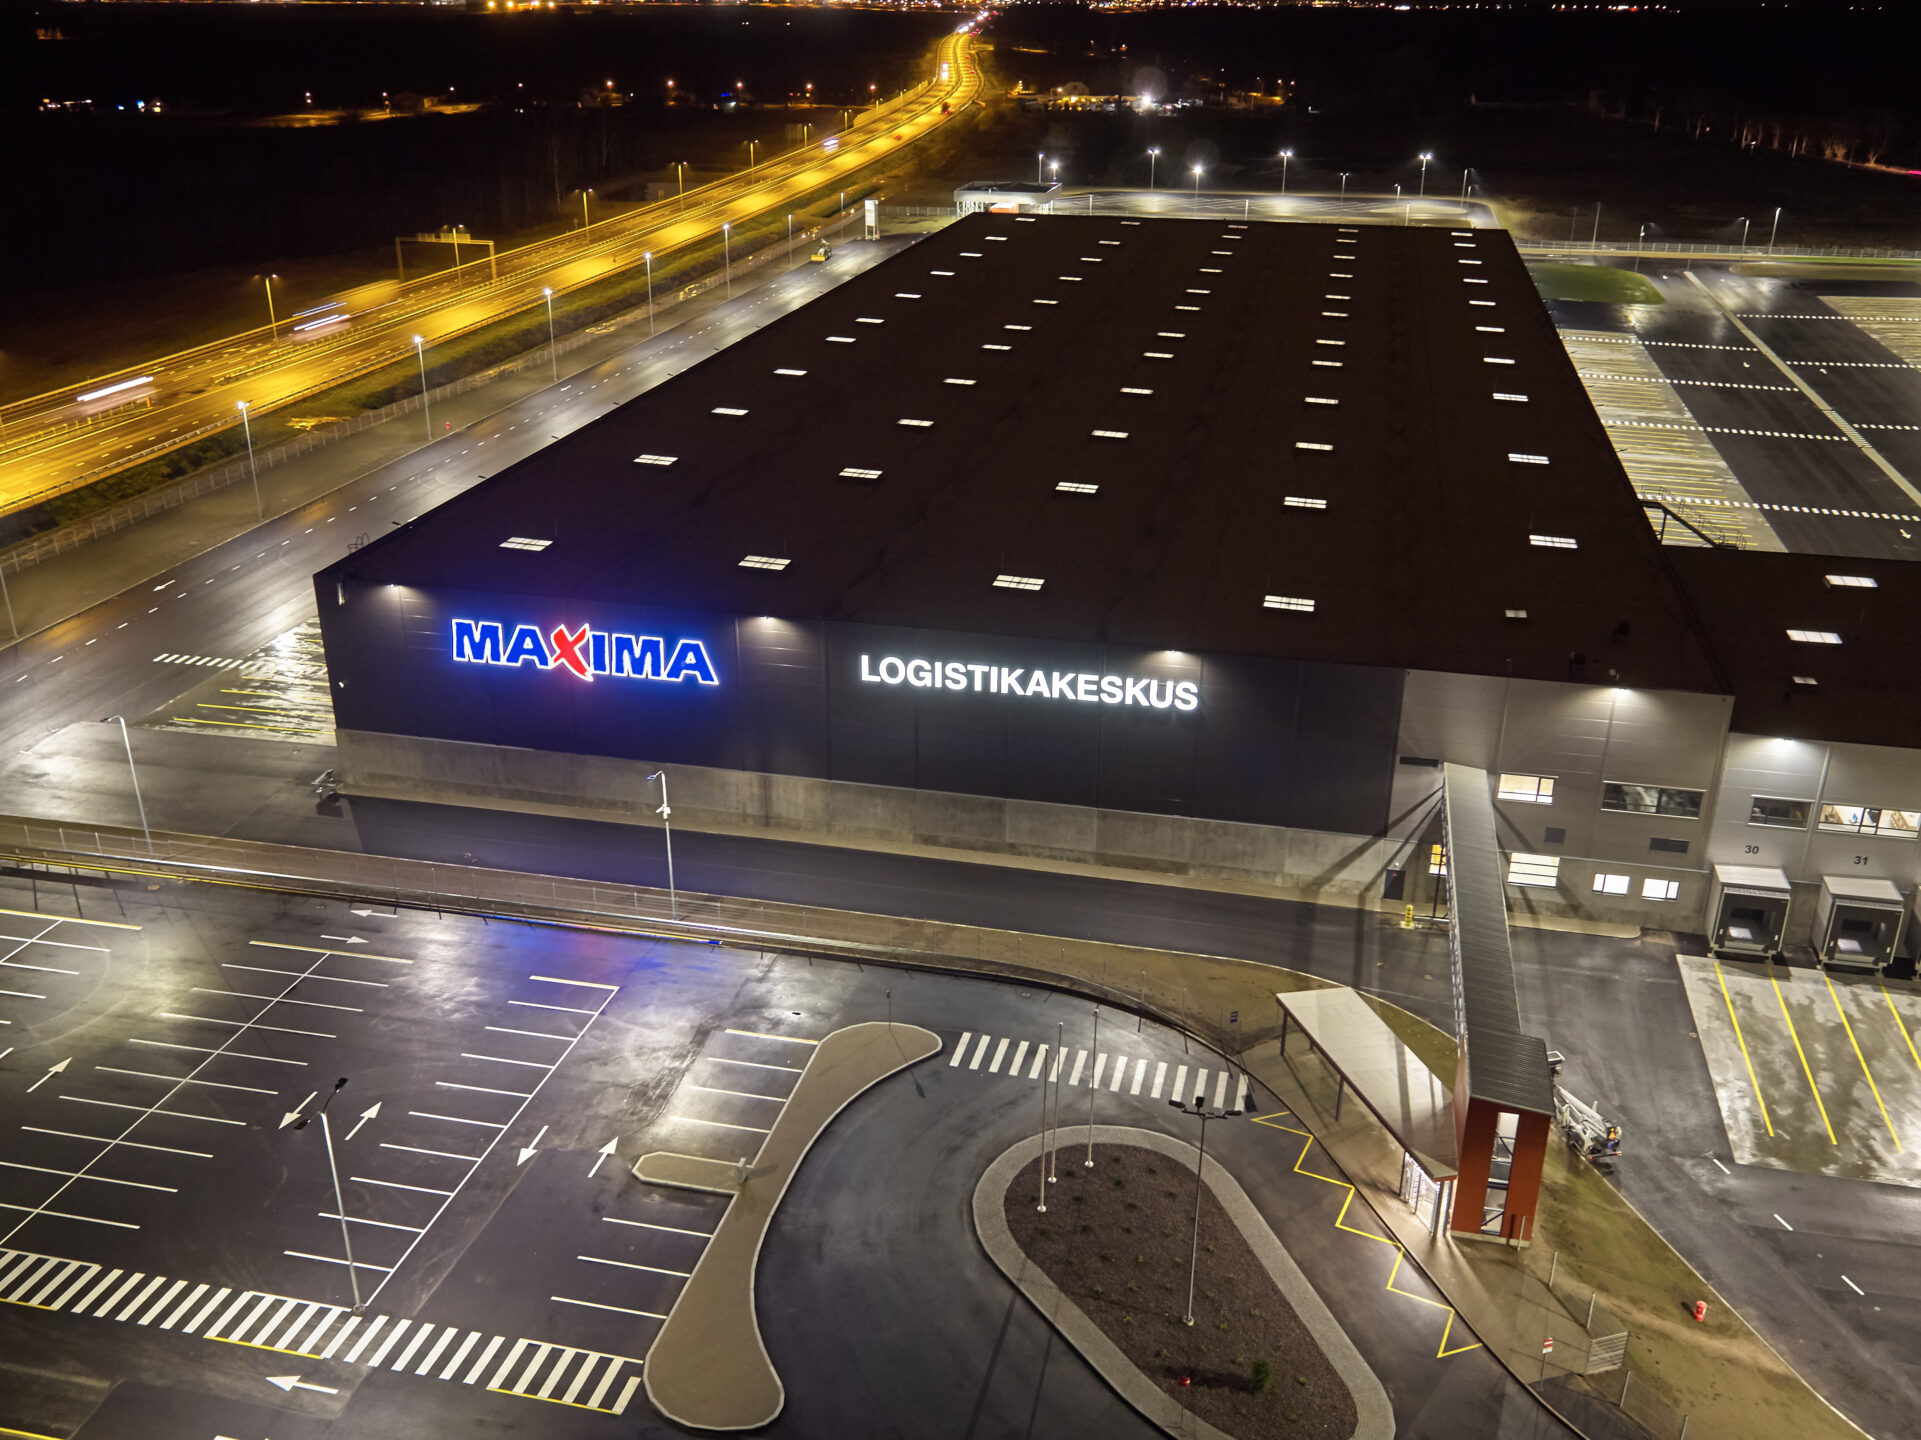 Maxima logistics centre